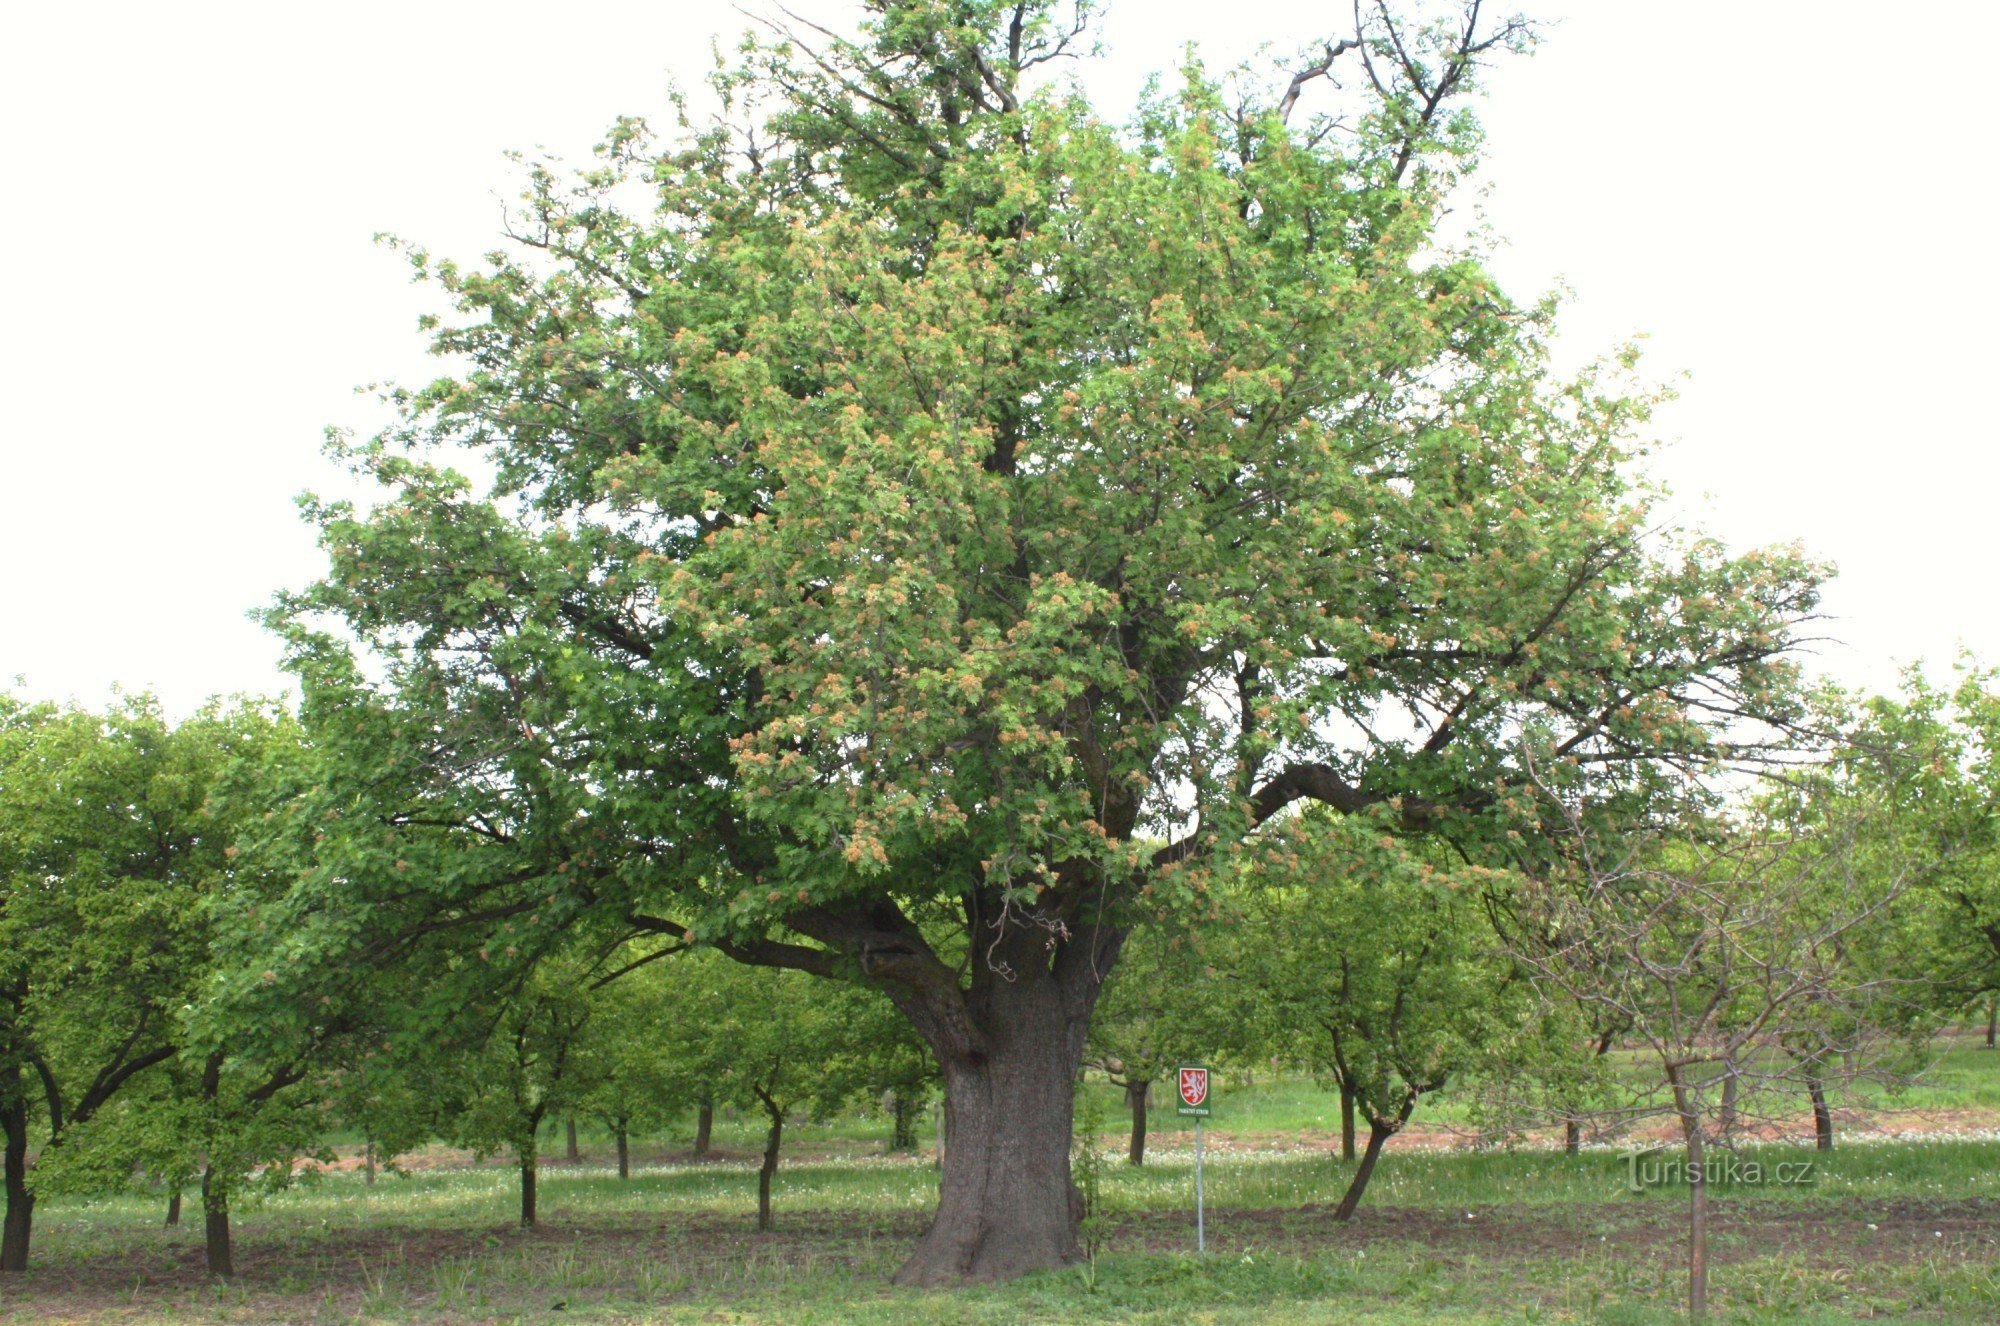 Nemčičky - niezapomniane drzewo wiśniowe